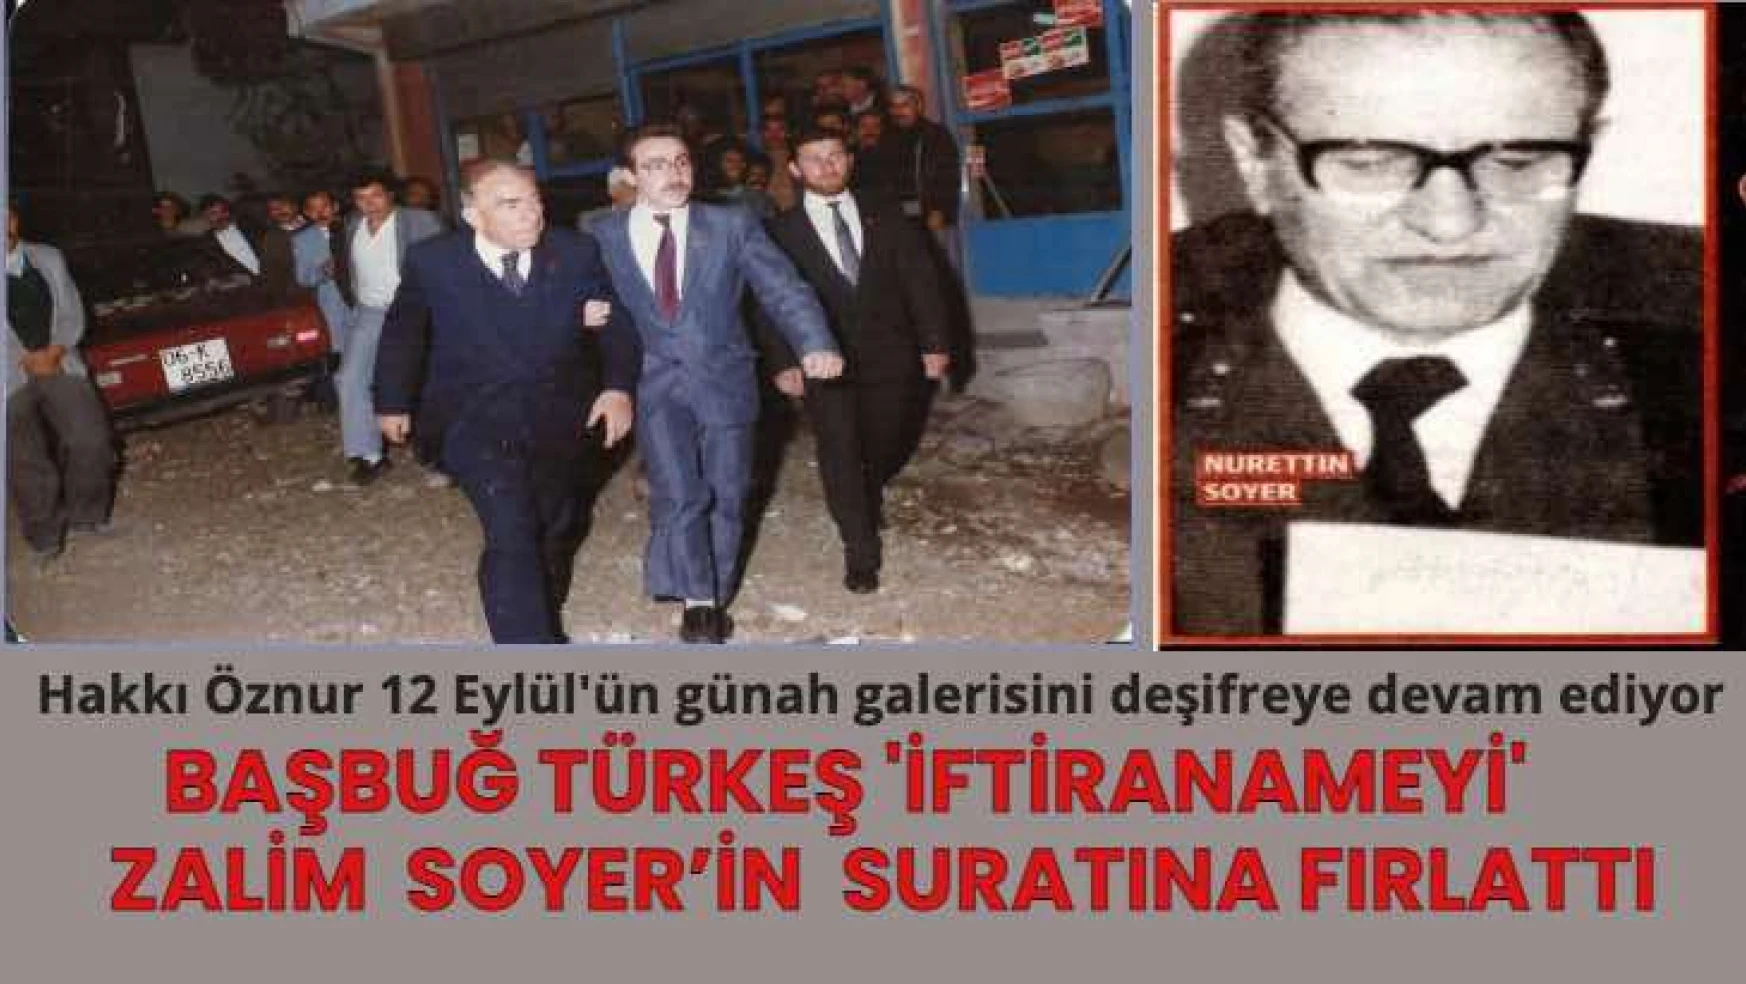 Hakkı Öznur: Başbuğ Türkeş 'iftiranameyi' Nurettin Soyer'in yüzüne fırlattı